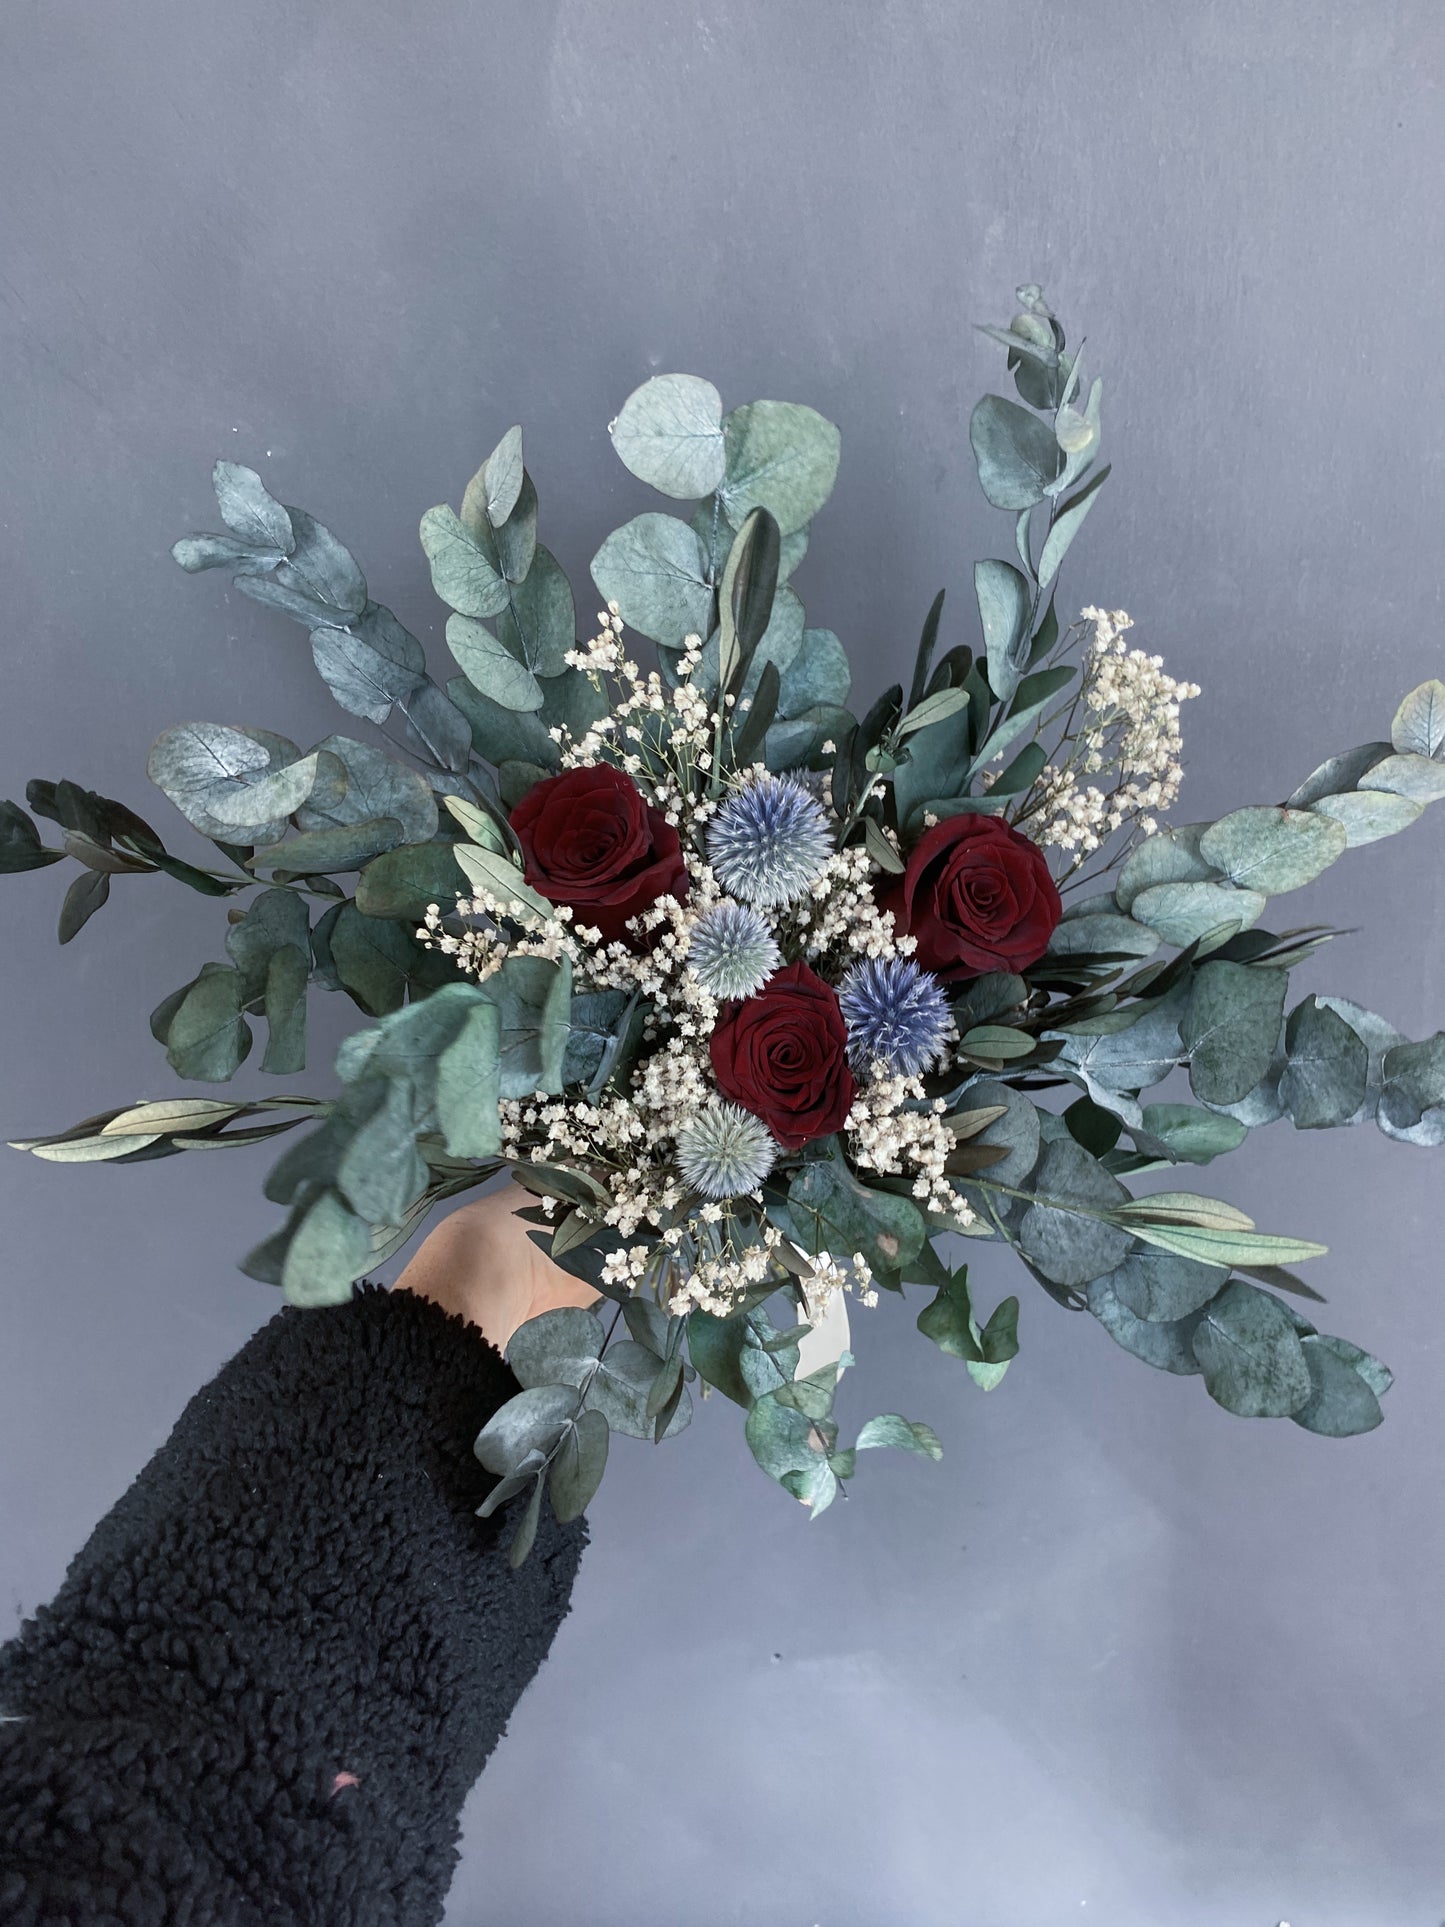 Lena dried flower bridal bouquet